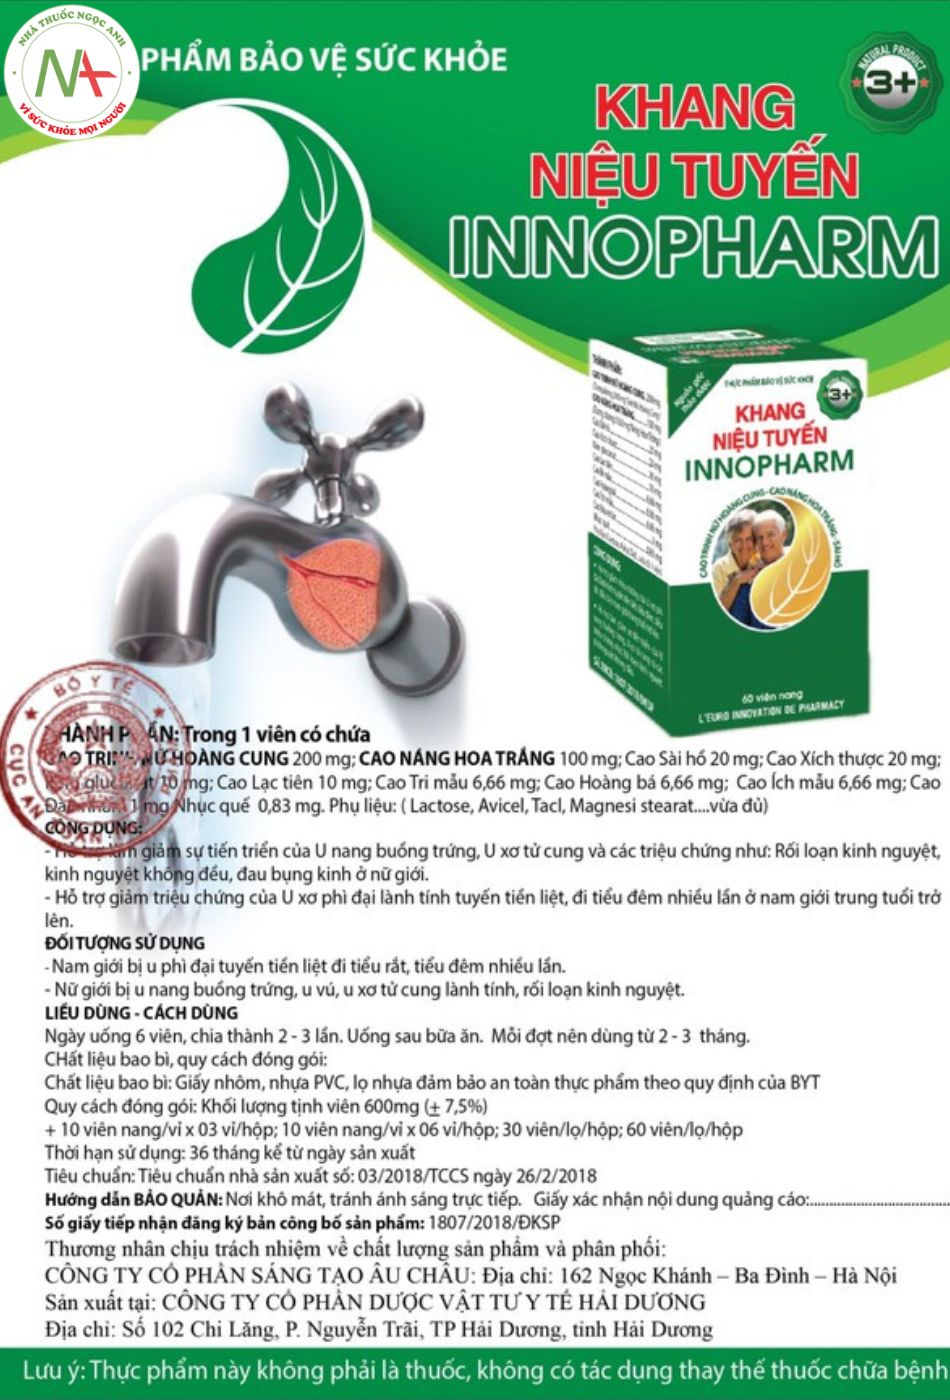 Tờ hướng dẫn sử dụng sản phẩm Khang niệu tuyến Innopharm